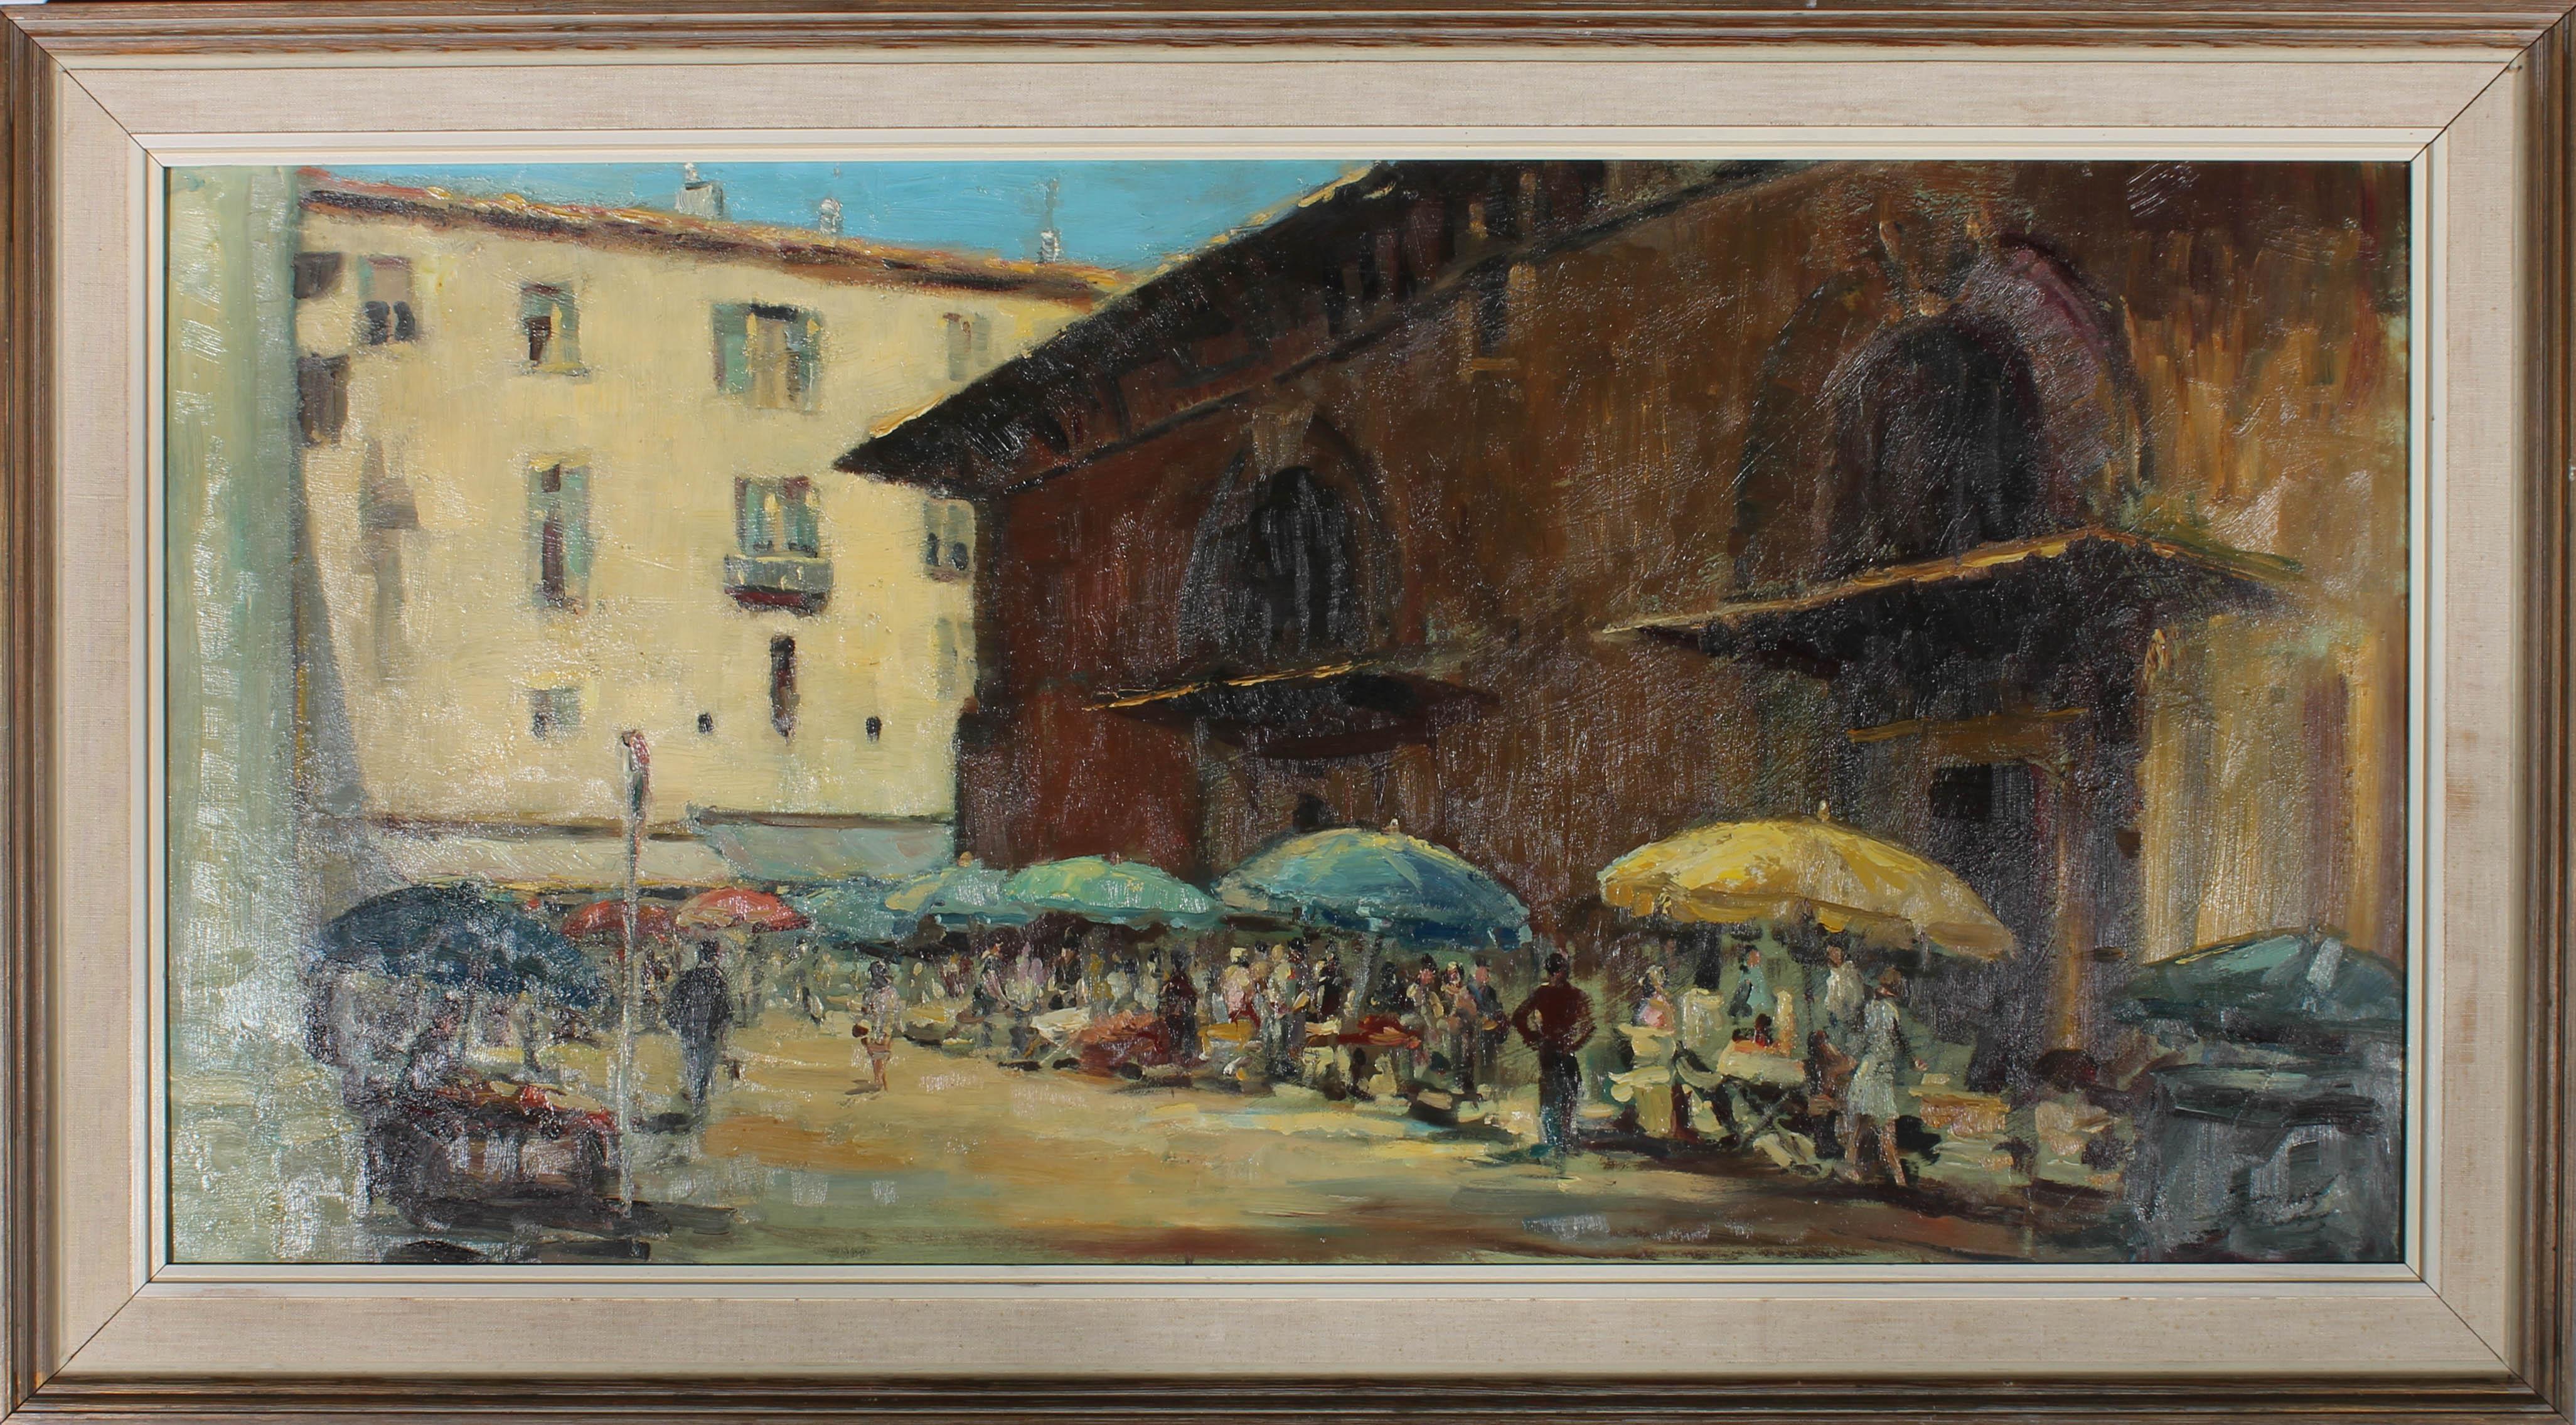 Eine schöne Straßenszene im Stil des Impressionismus des 20. Jahrhunderts zeigt einen italienischen Platz an einem heißen Sommertag mit Straßenhändlern, die ihre Waren unter Regenschirmen verkaufen. Der Künstler hat in der unteren rechten Ecke